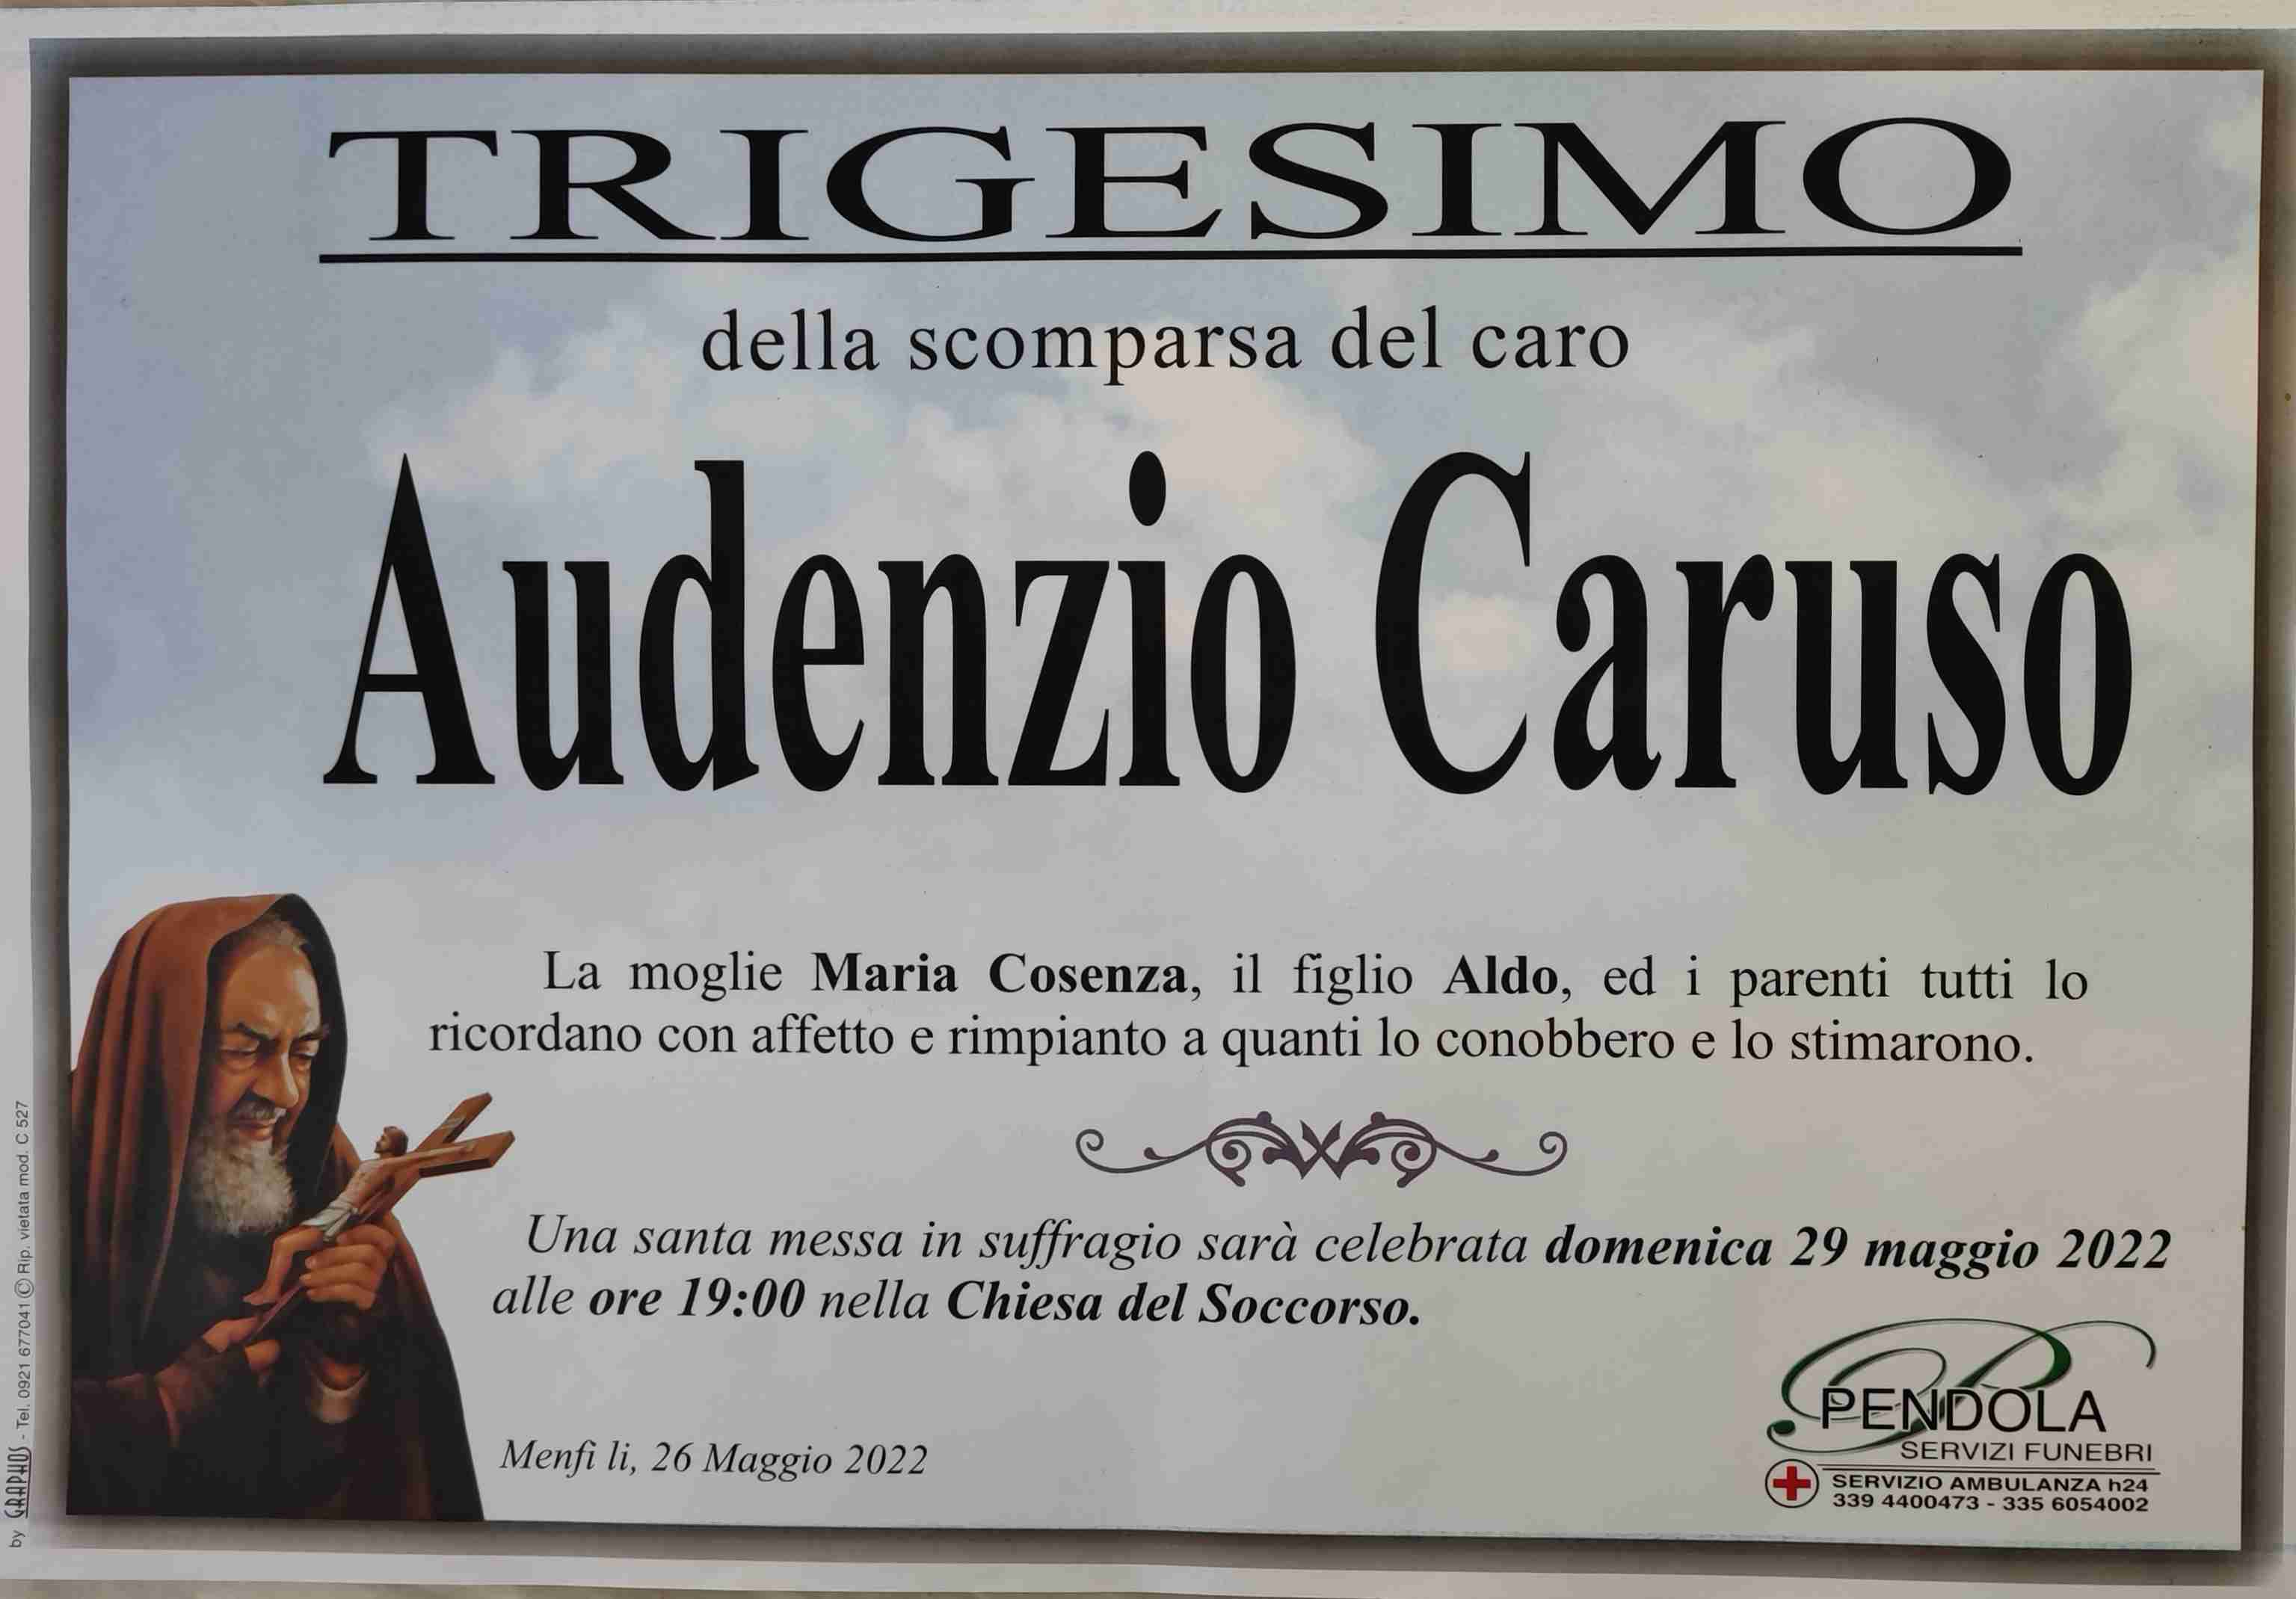 Audenzio Caruso